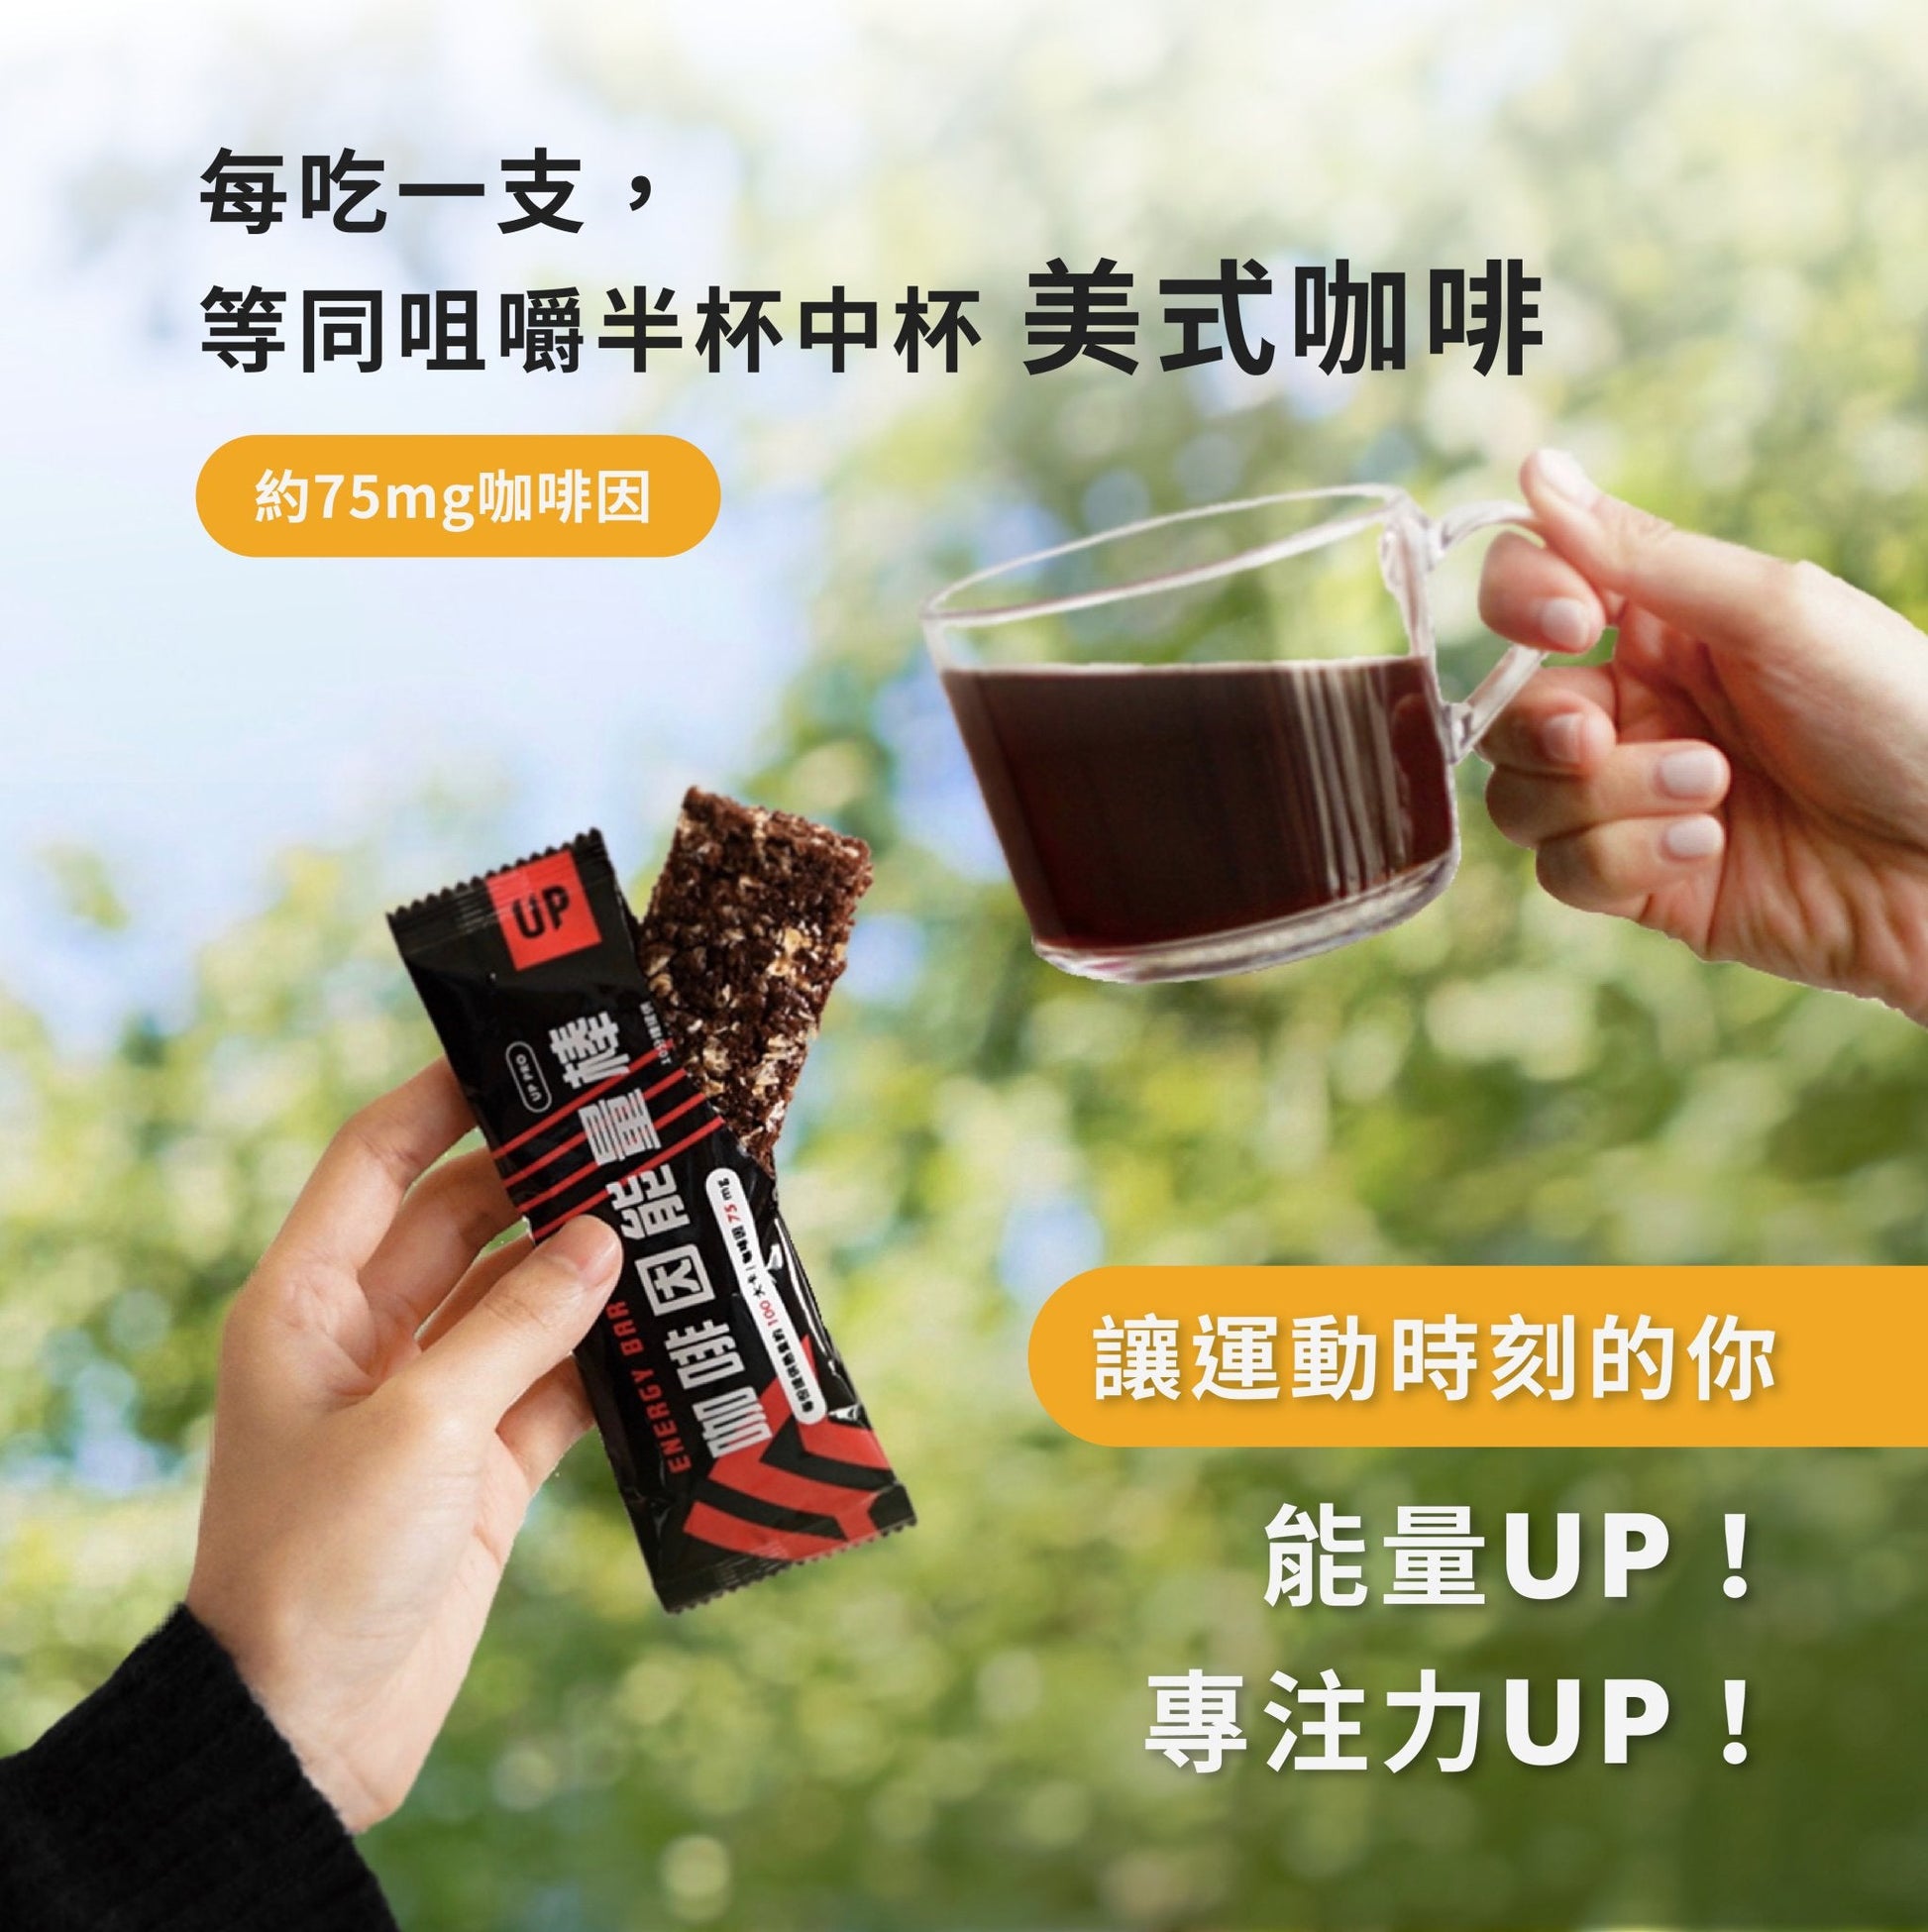 UP 咖啡因能量棒 鳳梨可可 盒裝 - Lite Lite Gear